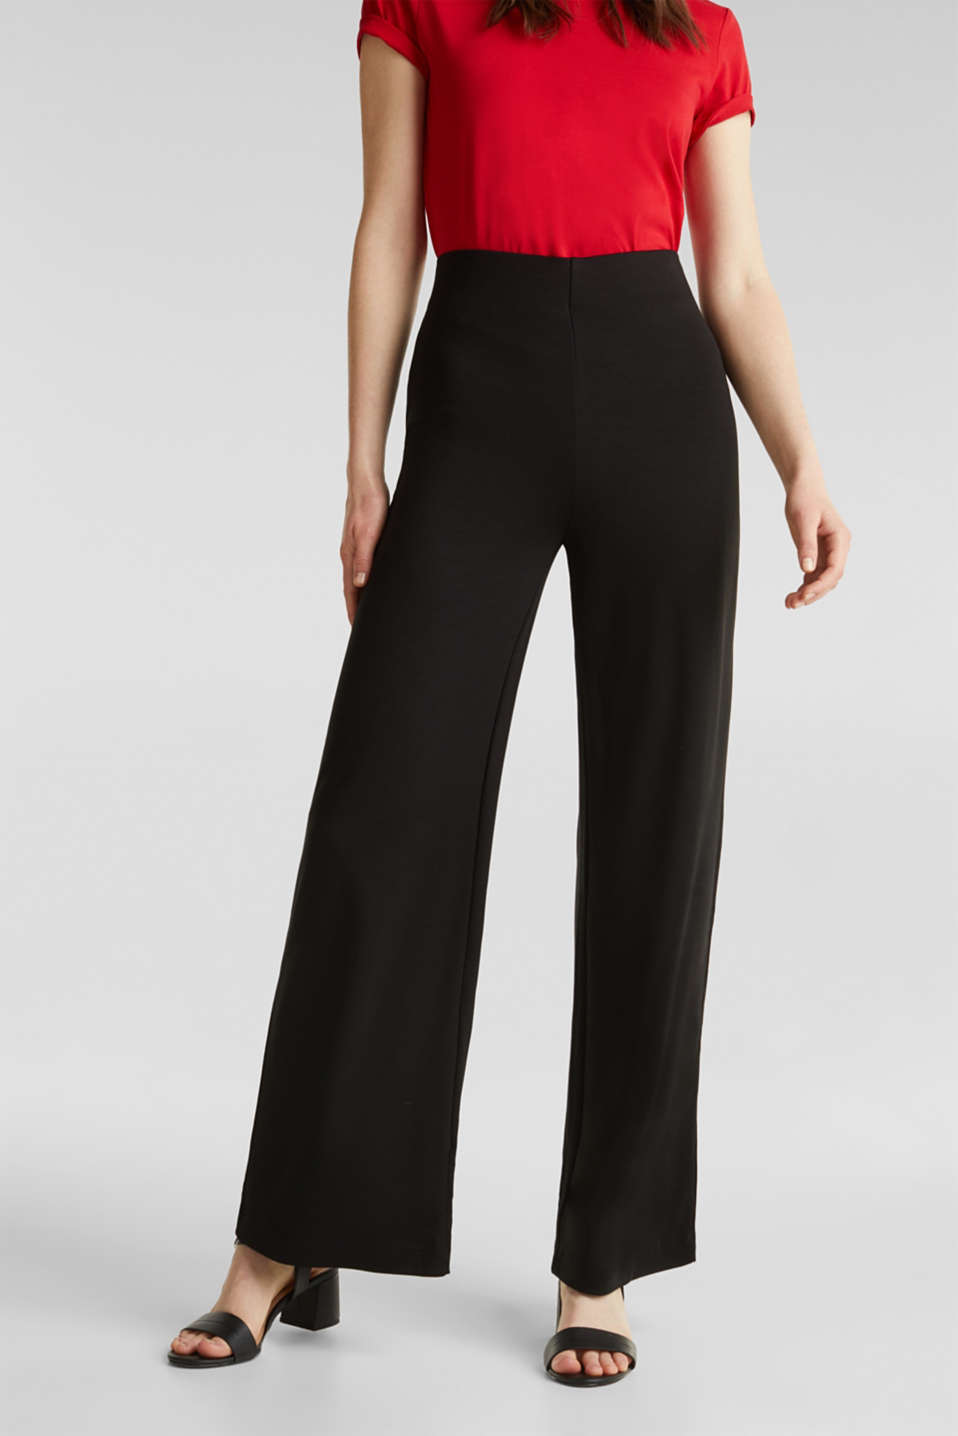 Onwijs Esprit - Jersey broek met wijde pijpen kopen in de online shop ND-19